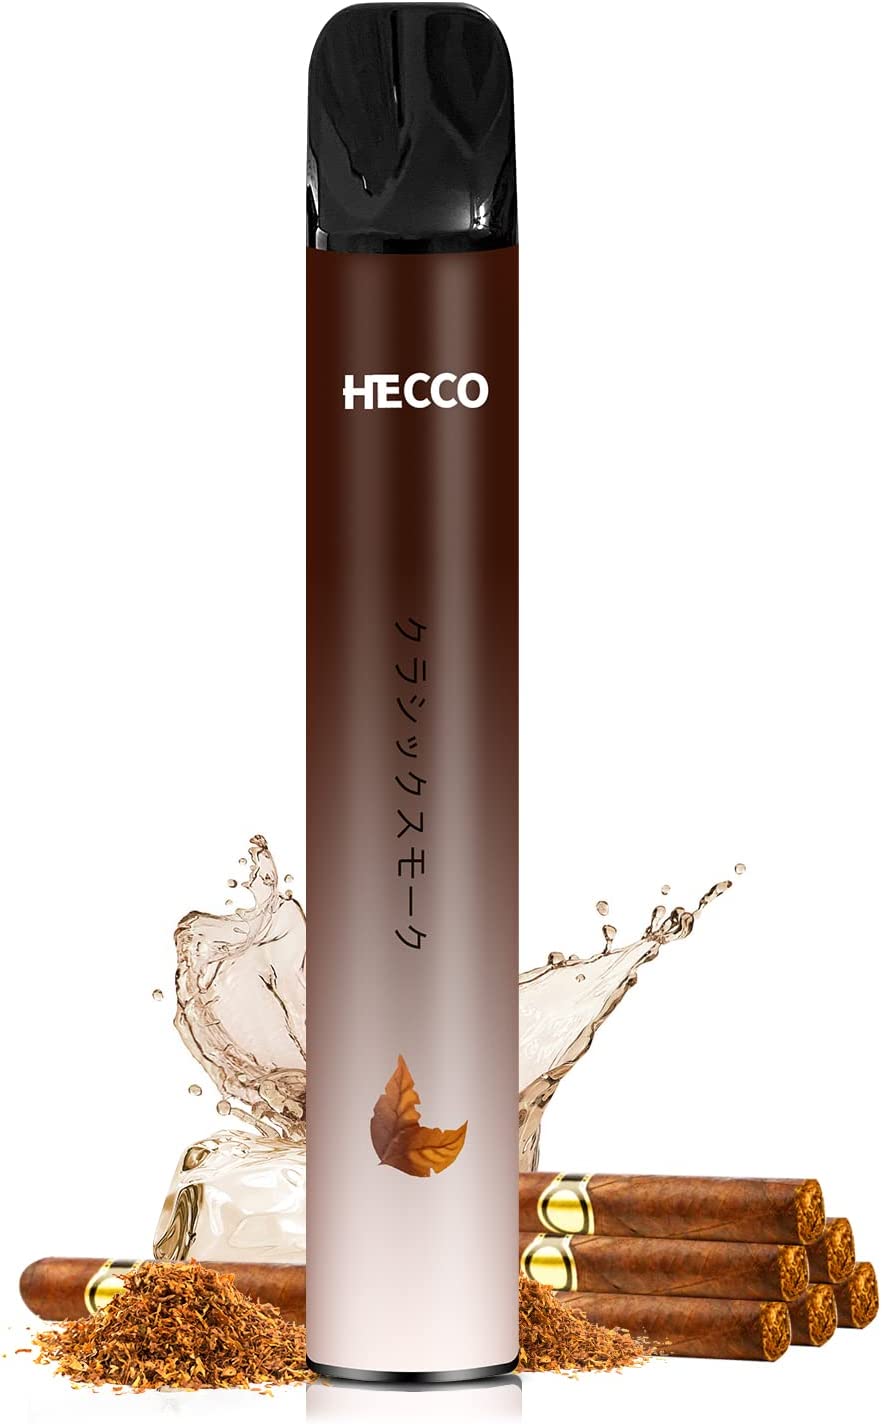 HECCO 電子タバコ 使い捨て 2,000回吸引可能 シガー クラシックスモーク フレーバー スターターキット 禁煙グッズ 吸い応え バニラタバコ ニコチンなし vape 爆煙 1本入れ